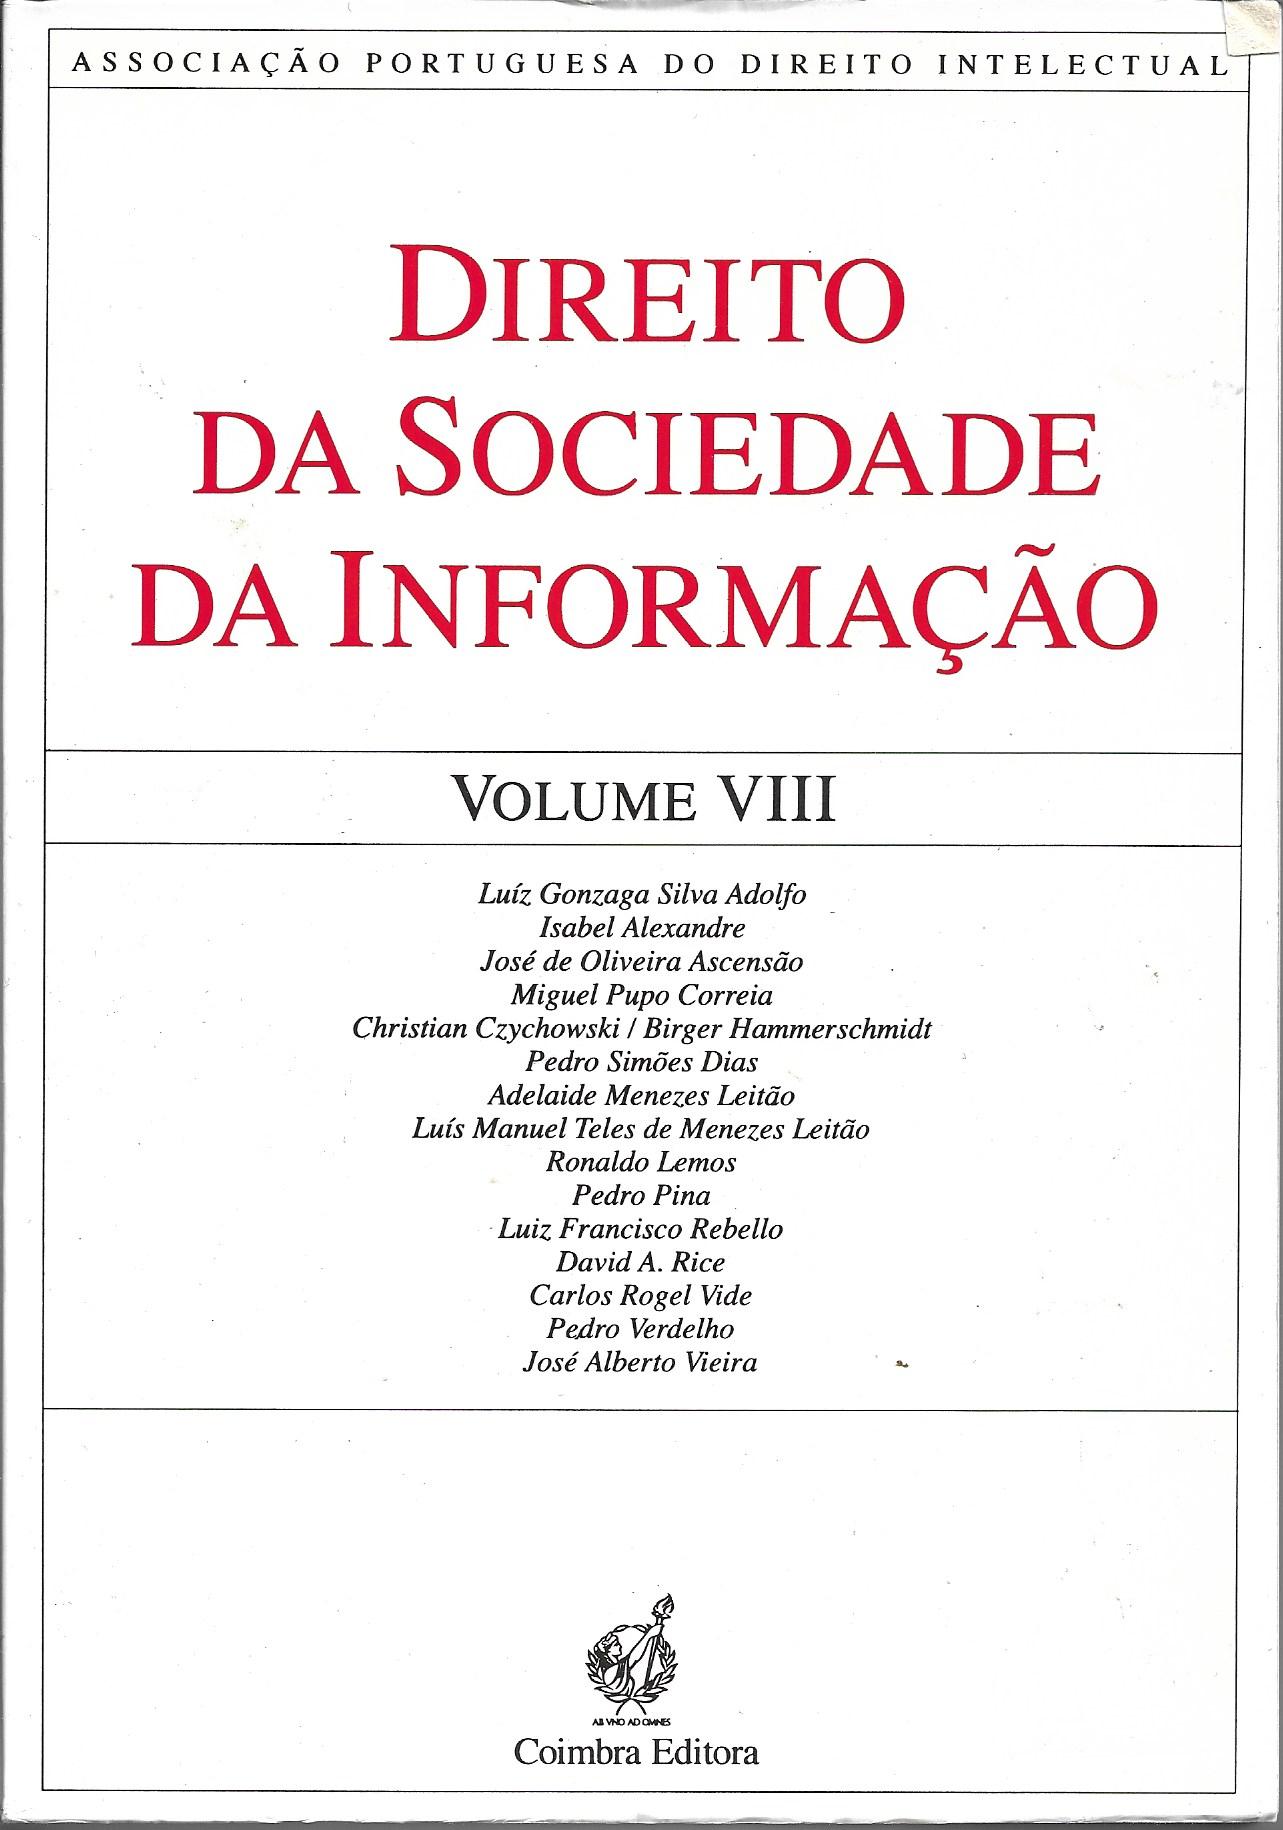 Direito da Sociedade da Informação - VOLUME VIII